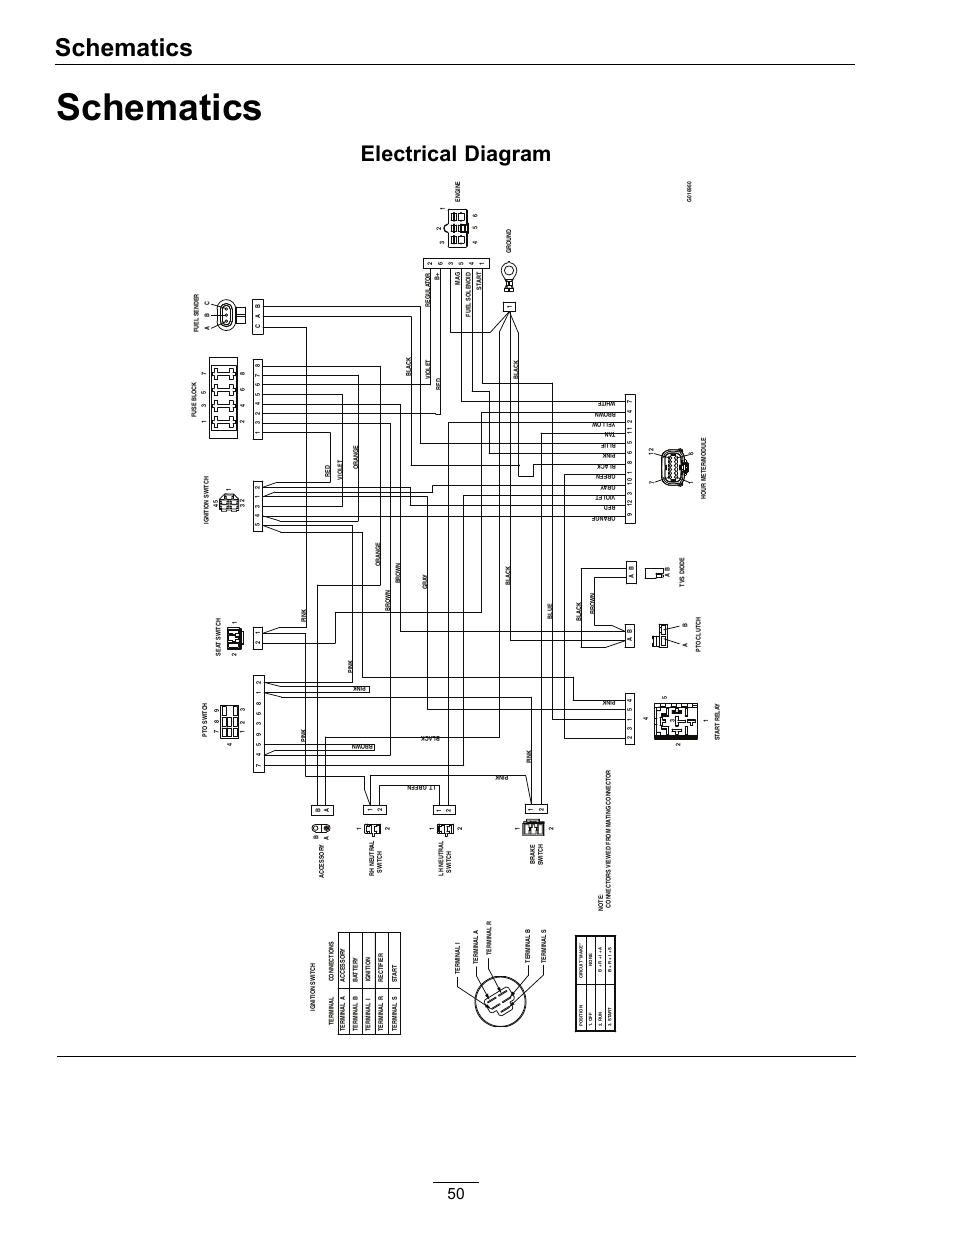 2010 jeep grand cherokee wiring diagram nag1 llug pinout